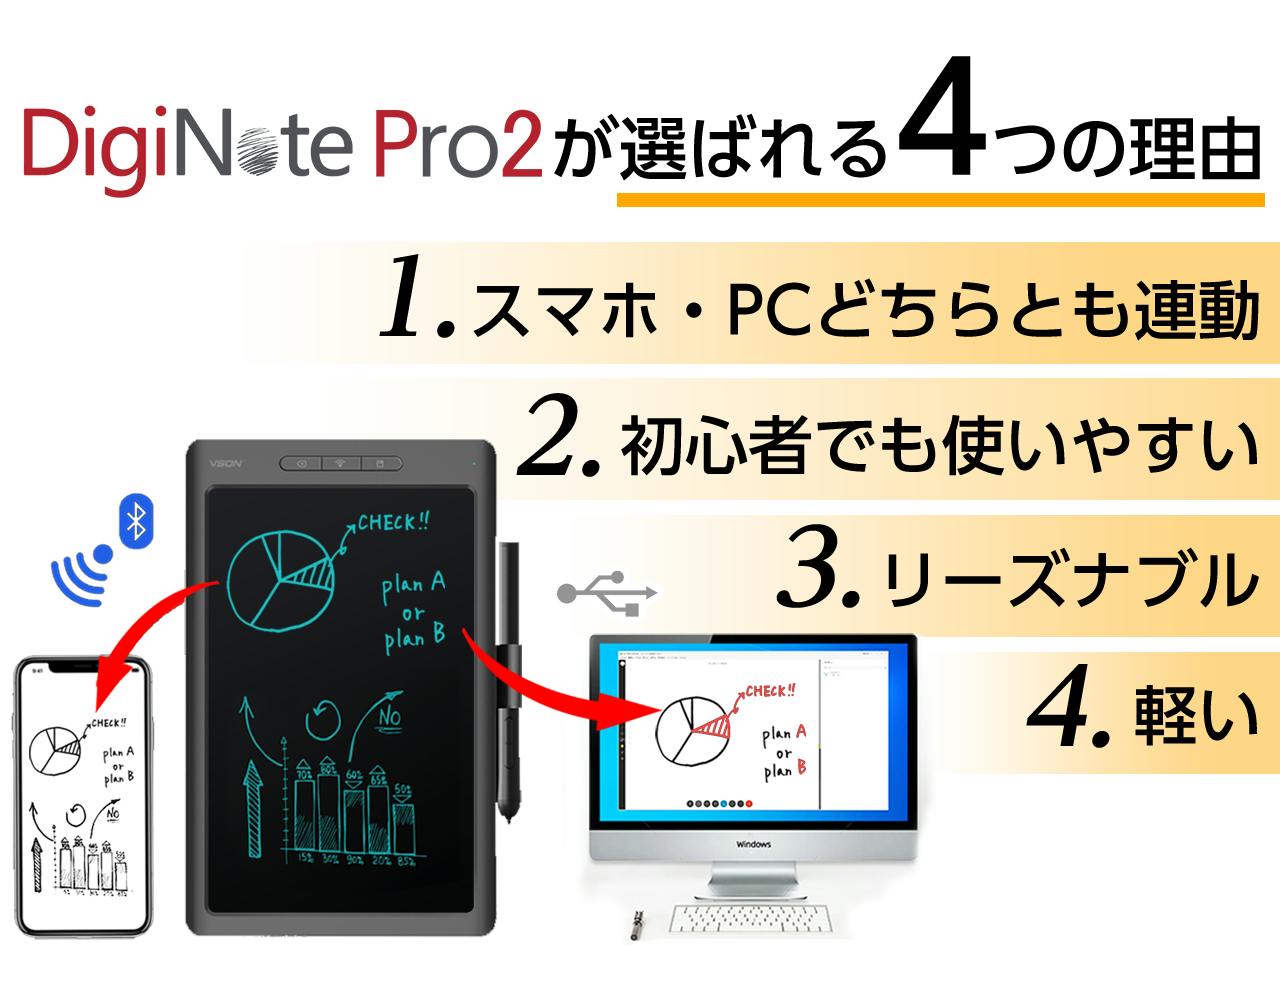 バッテリーレスペン採用】進化した『DigiNote Pro2』パソコン連動可能 